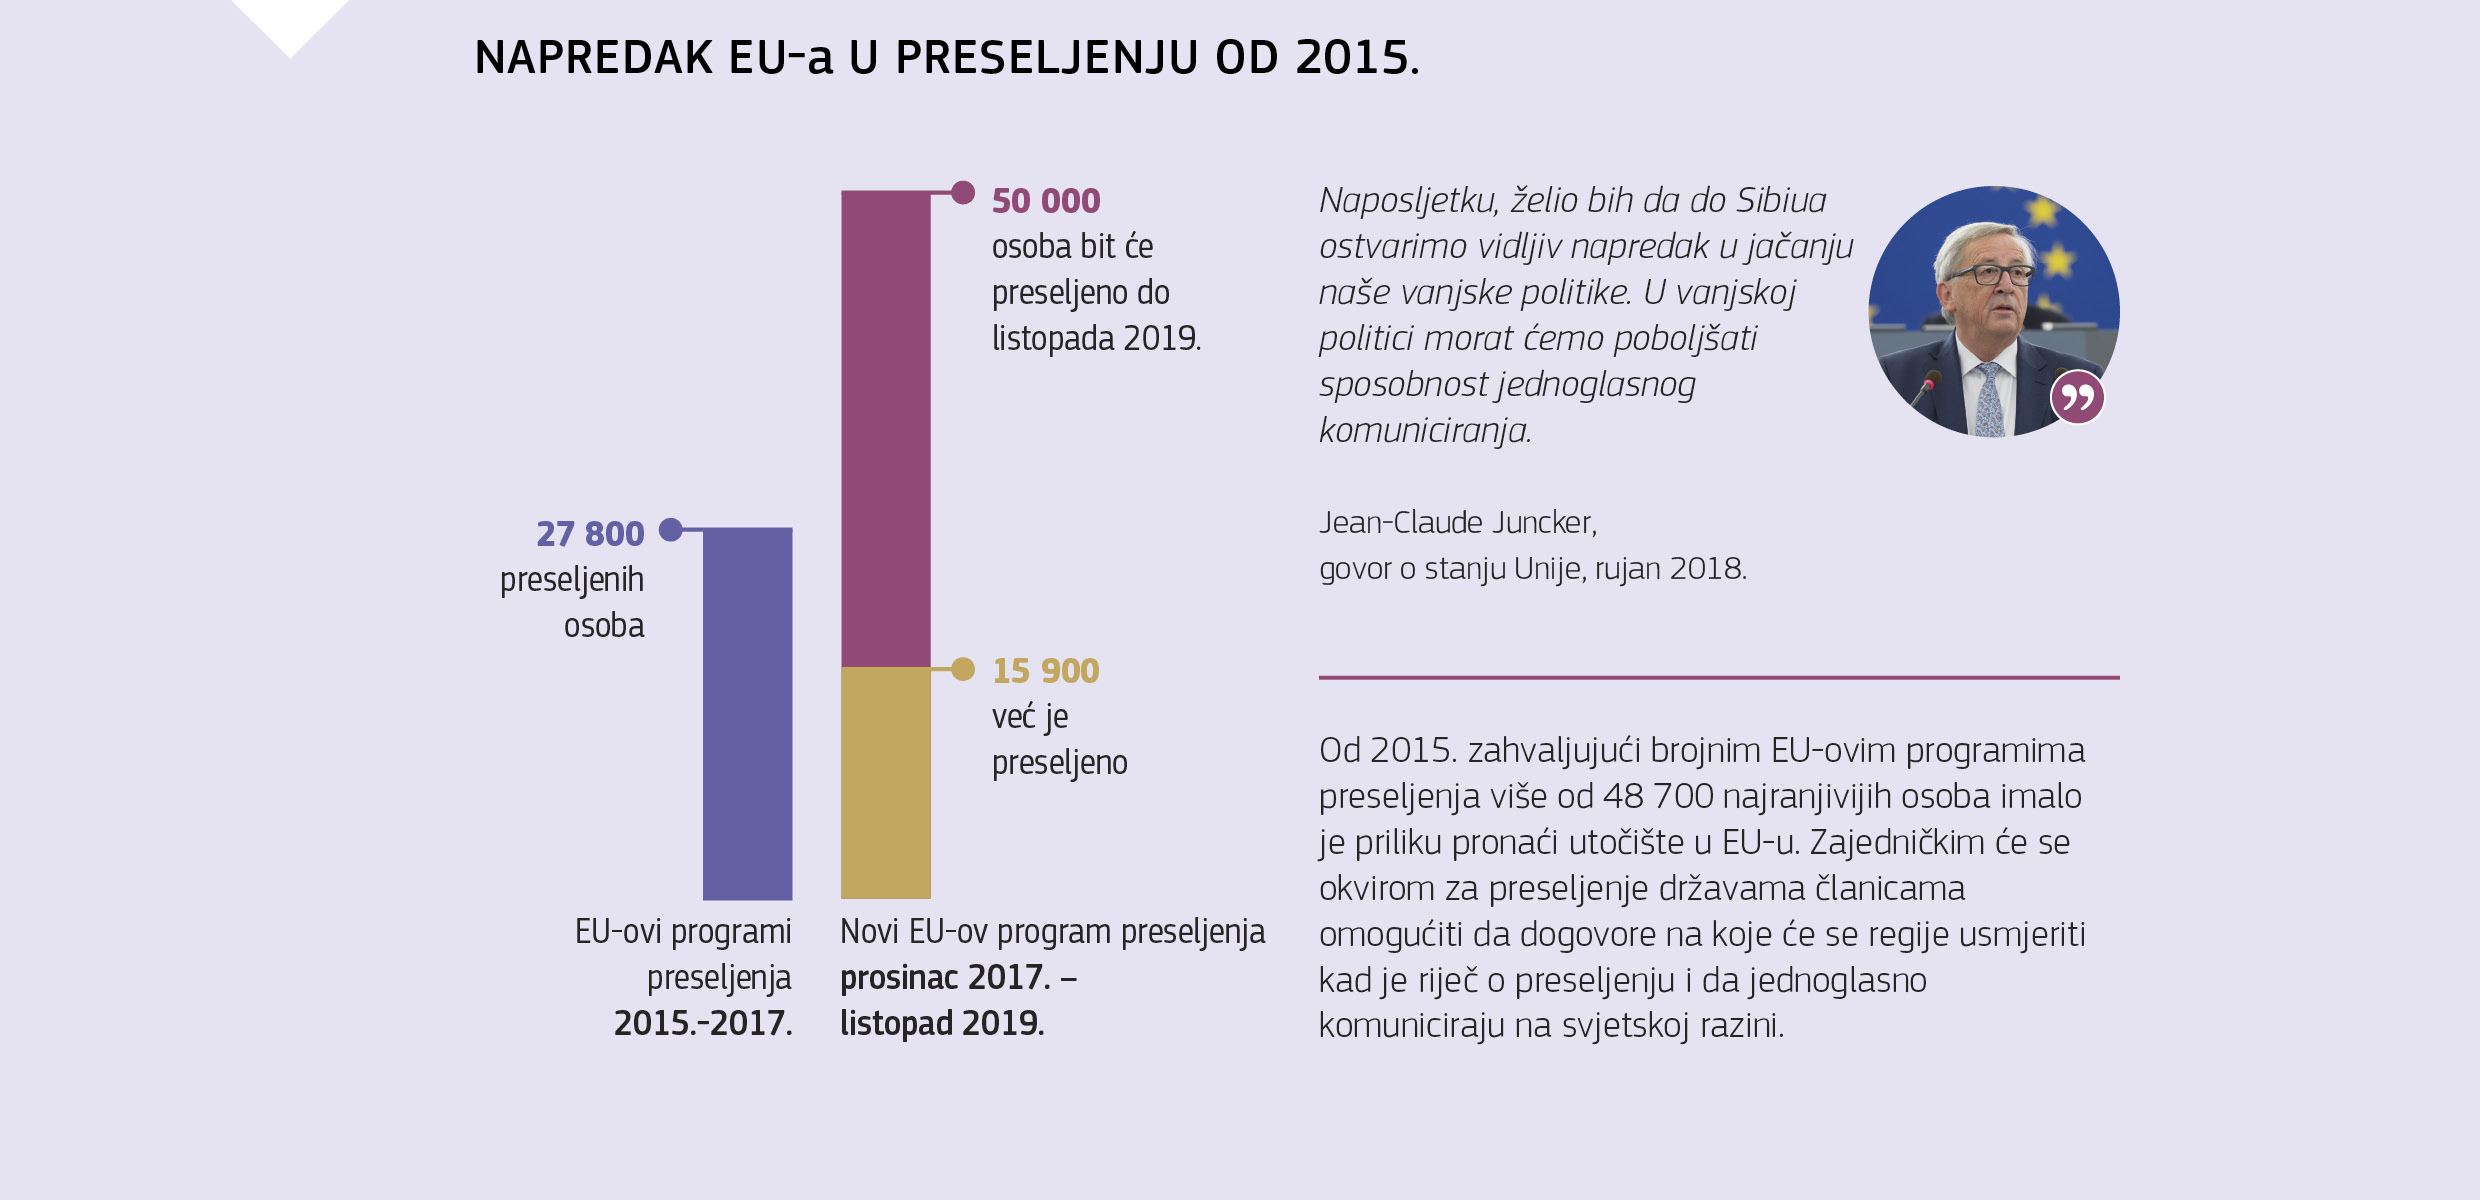 NAPREDAK EU-a U PRESELJENJU OD 2015.